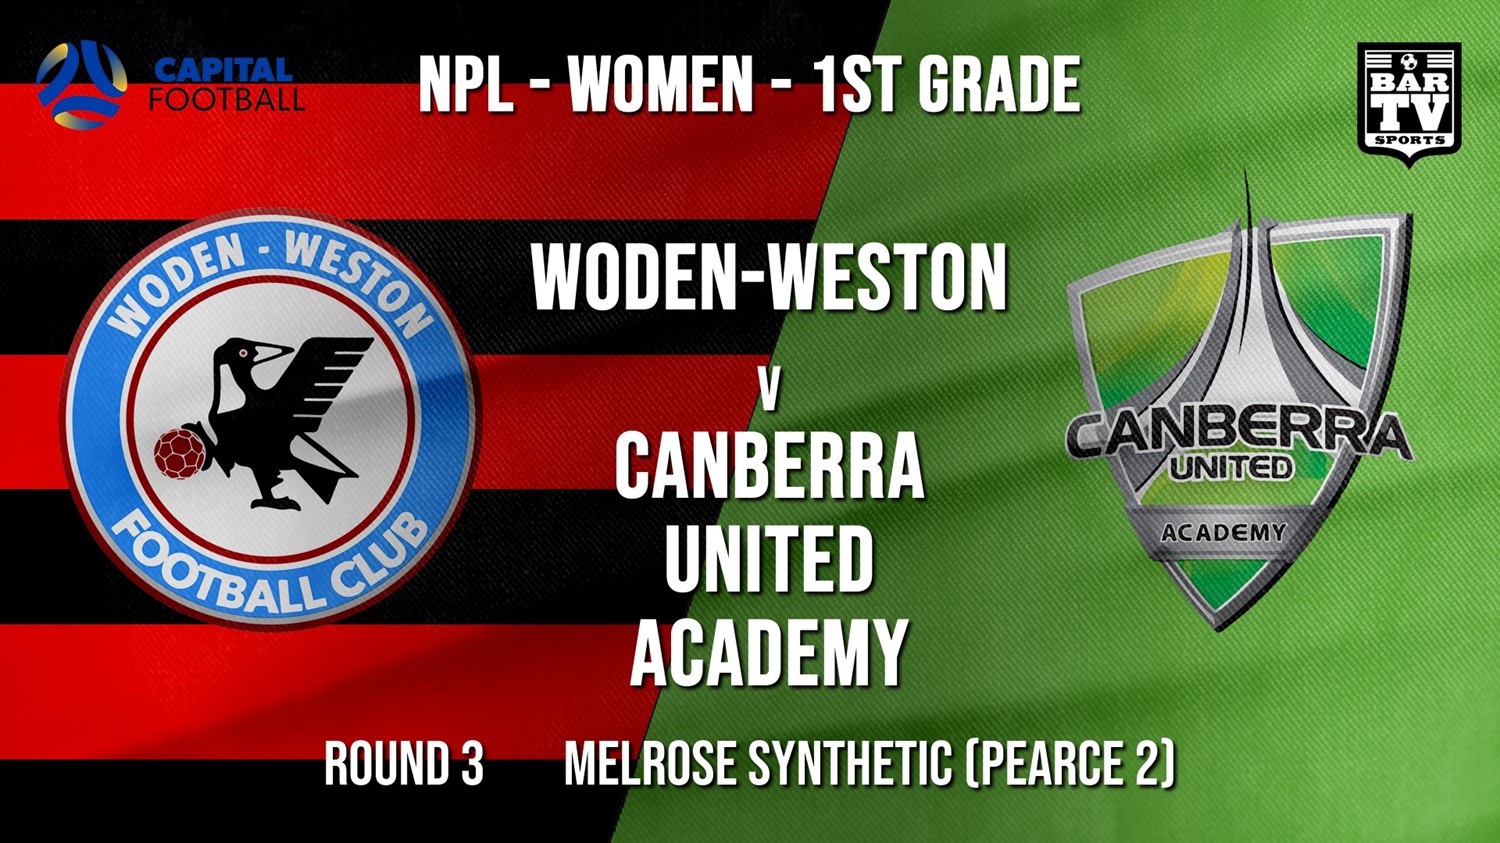 NPLW - Capital Round 3 - Woden-Weston FC (women) v Canberra United Academy Minigame Slate Image